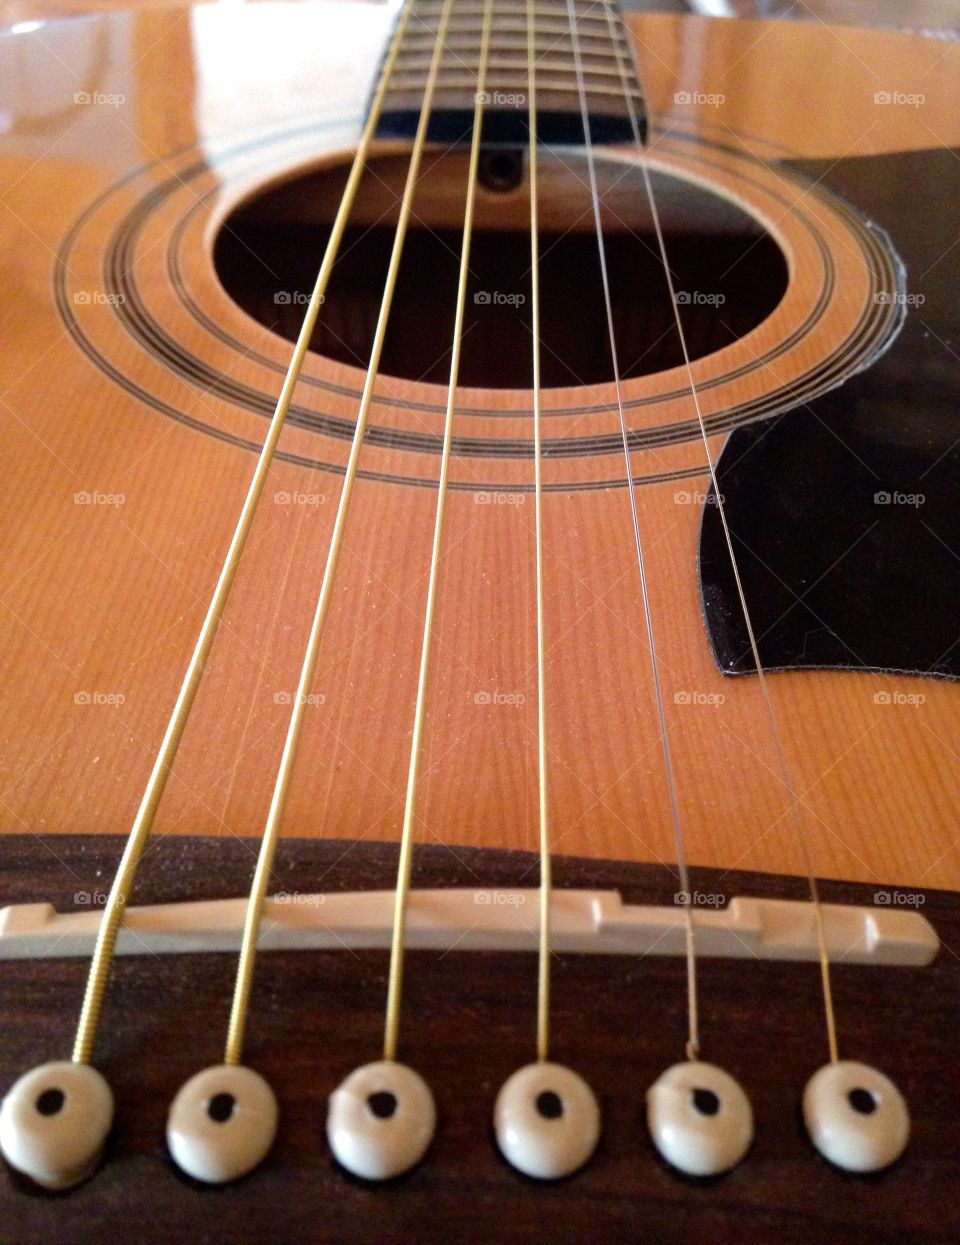 Guitar . Guitar strings 